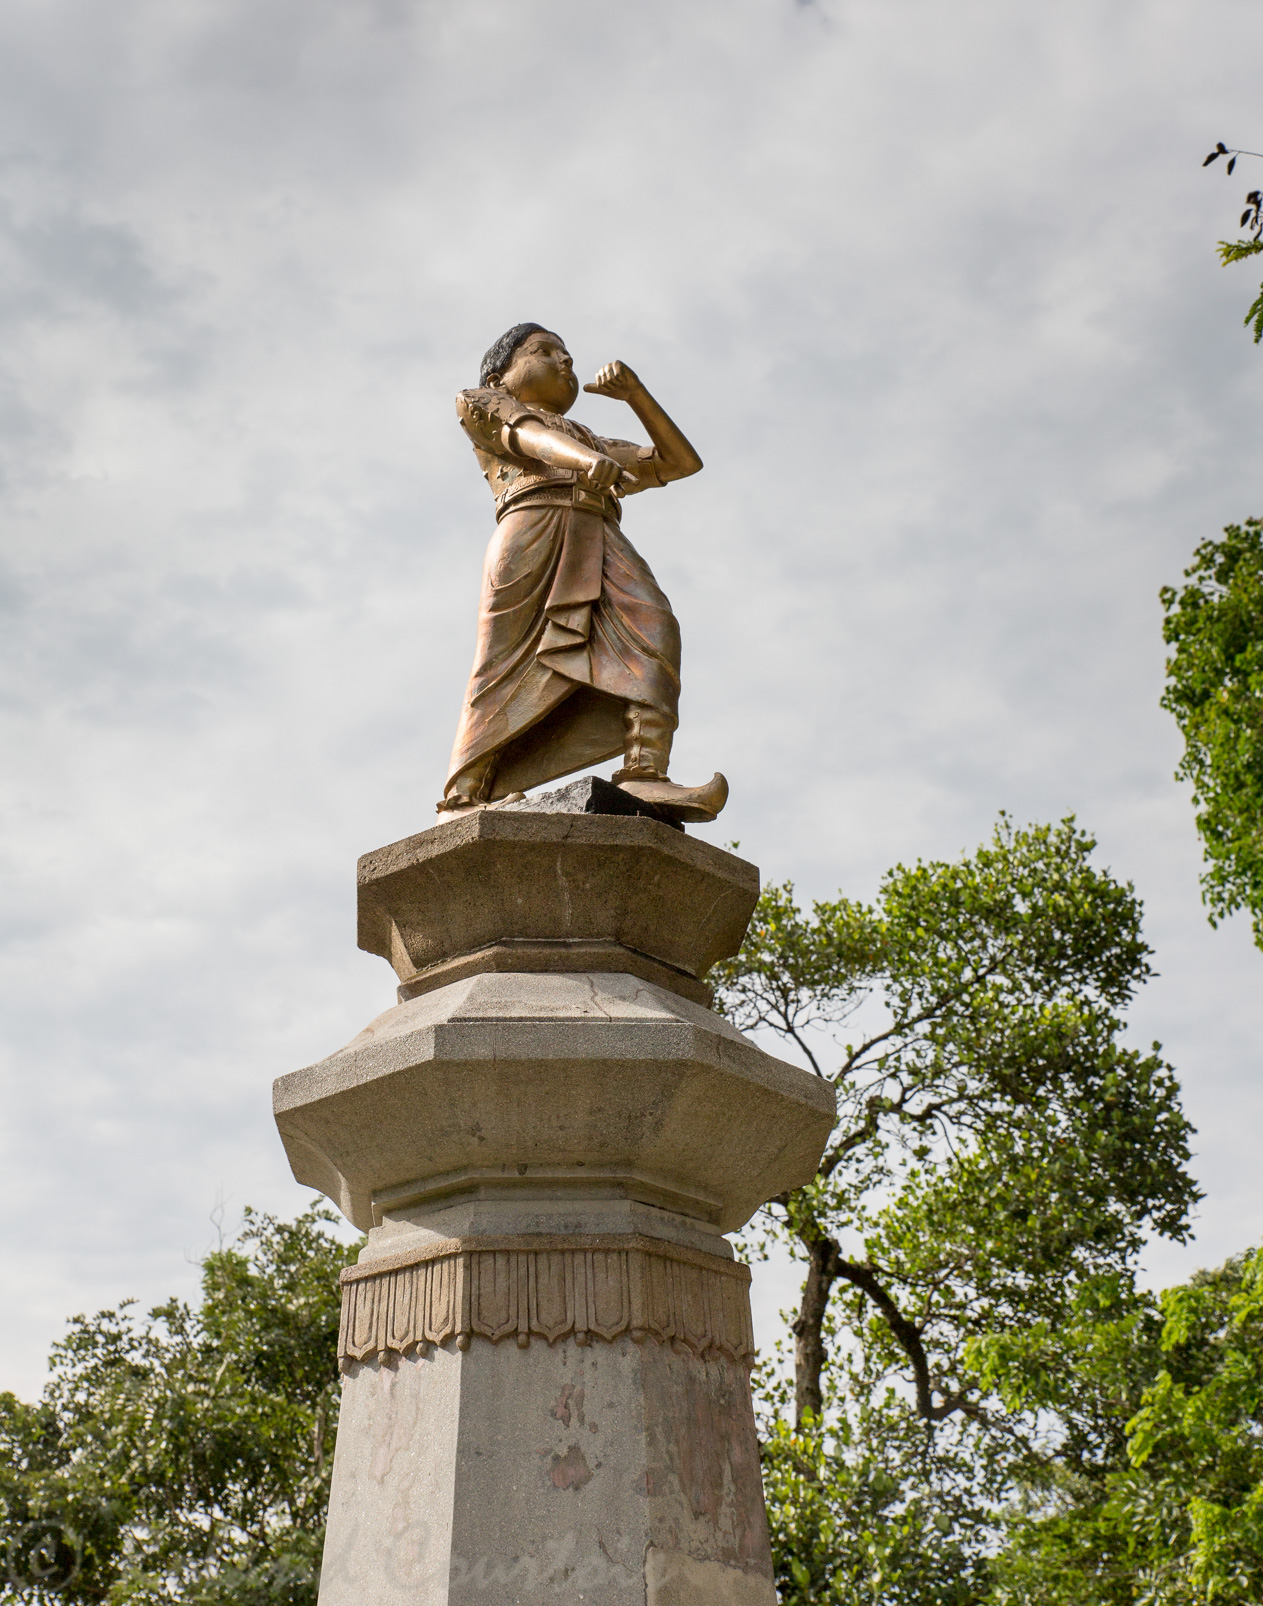 Dans le jardin devant le temple de la Dent4. statue de bronze du jeune Madduma Bandare, fils héroique de Ehelapola Dissawe, qui fit face sans peur à la mort qui l’attendait en 1814,  lors de l'horrible crime commis par Sri Wickrama Rajasinghe, le dernier monarque de Kandy.